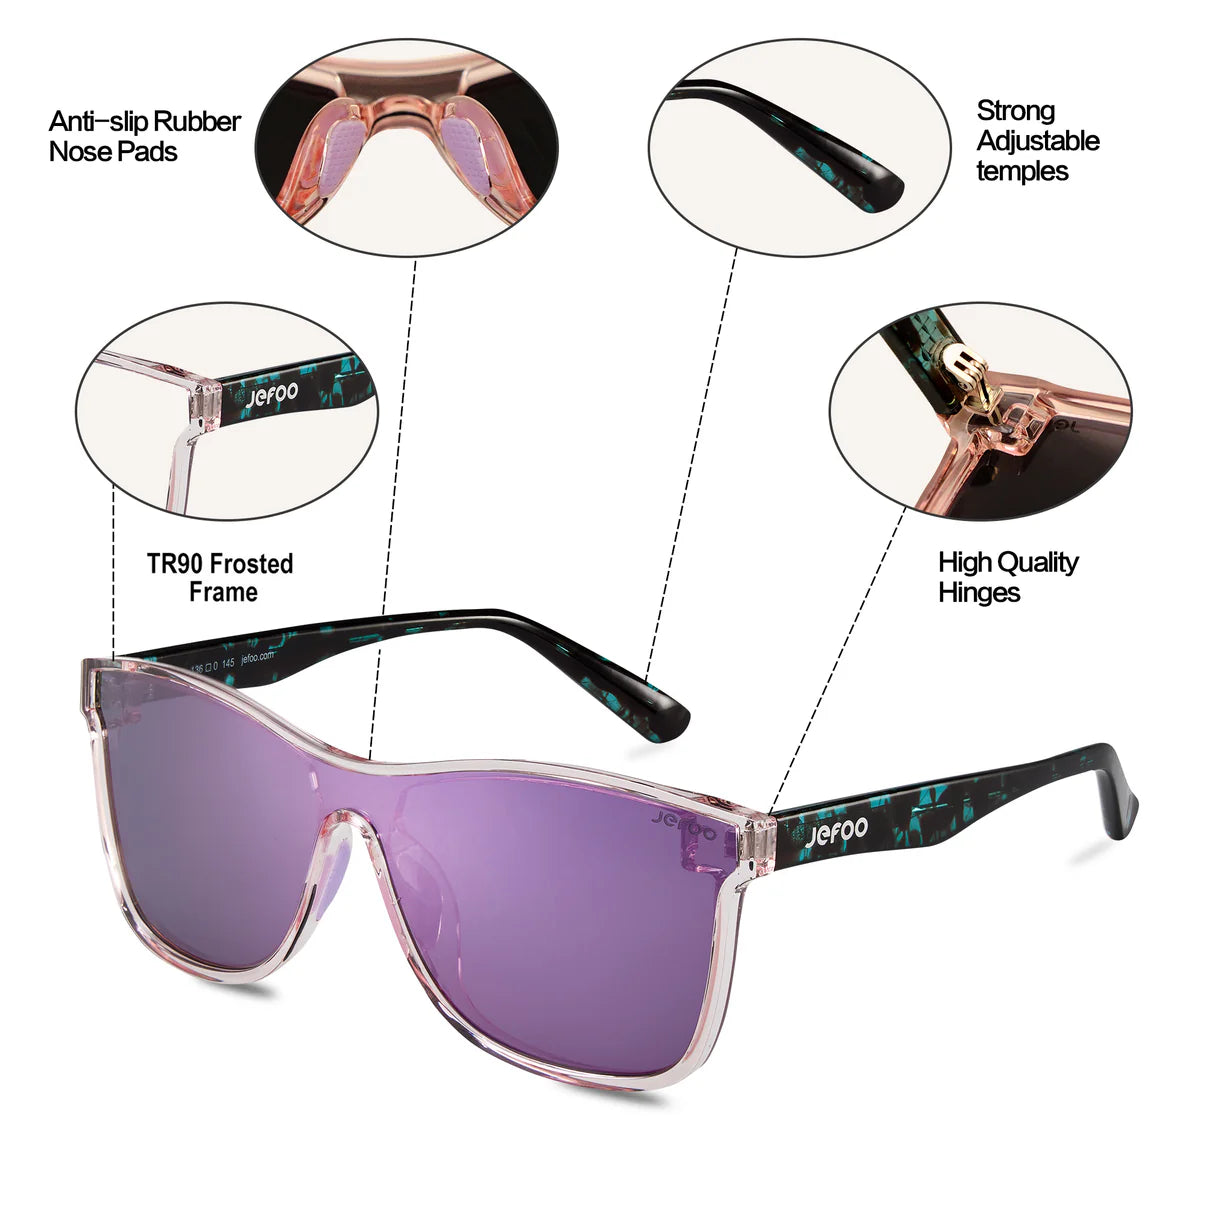 JEFOO-Fashion-One-Lens-Sunglasses